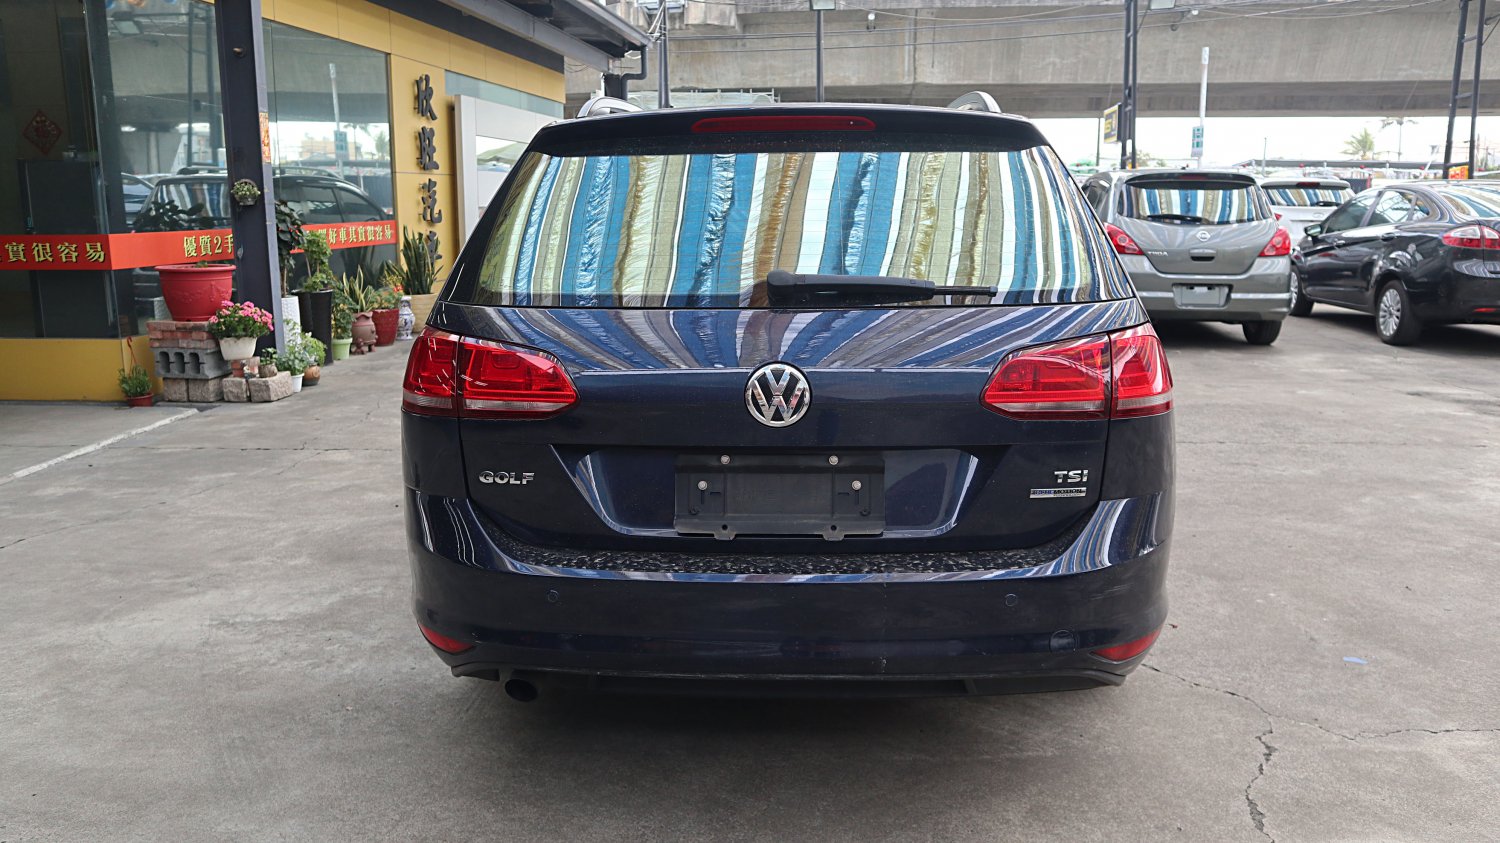 VW 福斯 ／ Golf ／ 2014年 ／ 2014年 VW Golf  藍色 福斯中古車 ／ 九州欣旺汽車 (台南)